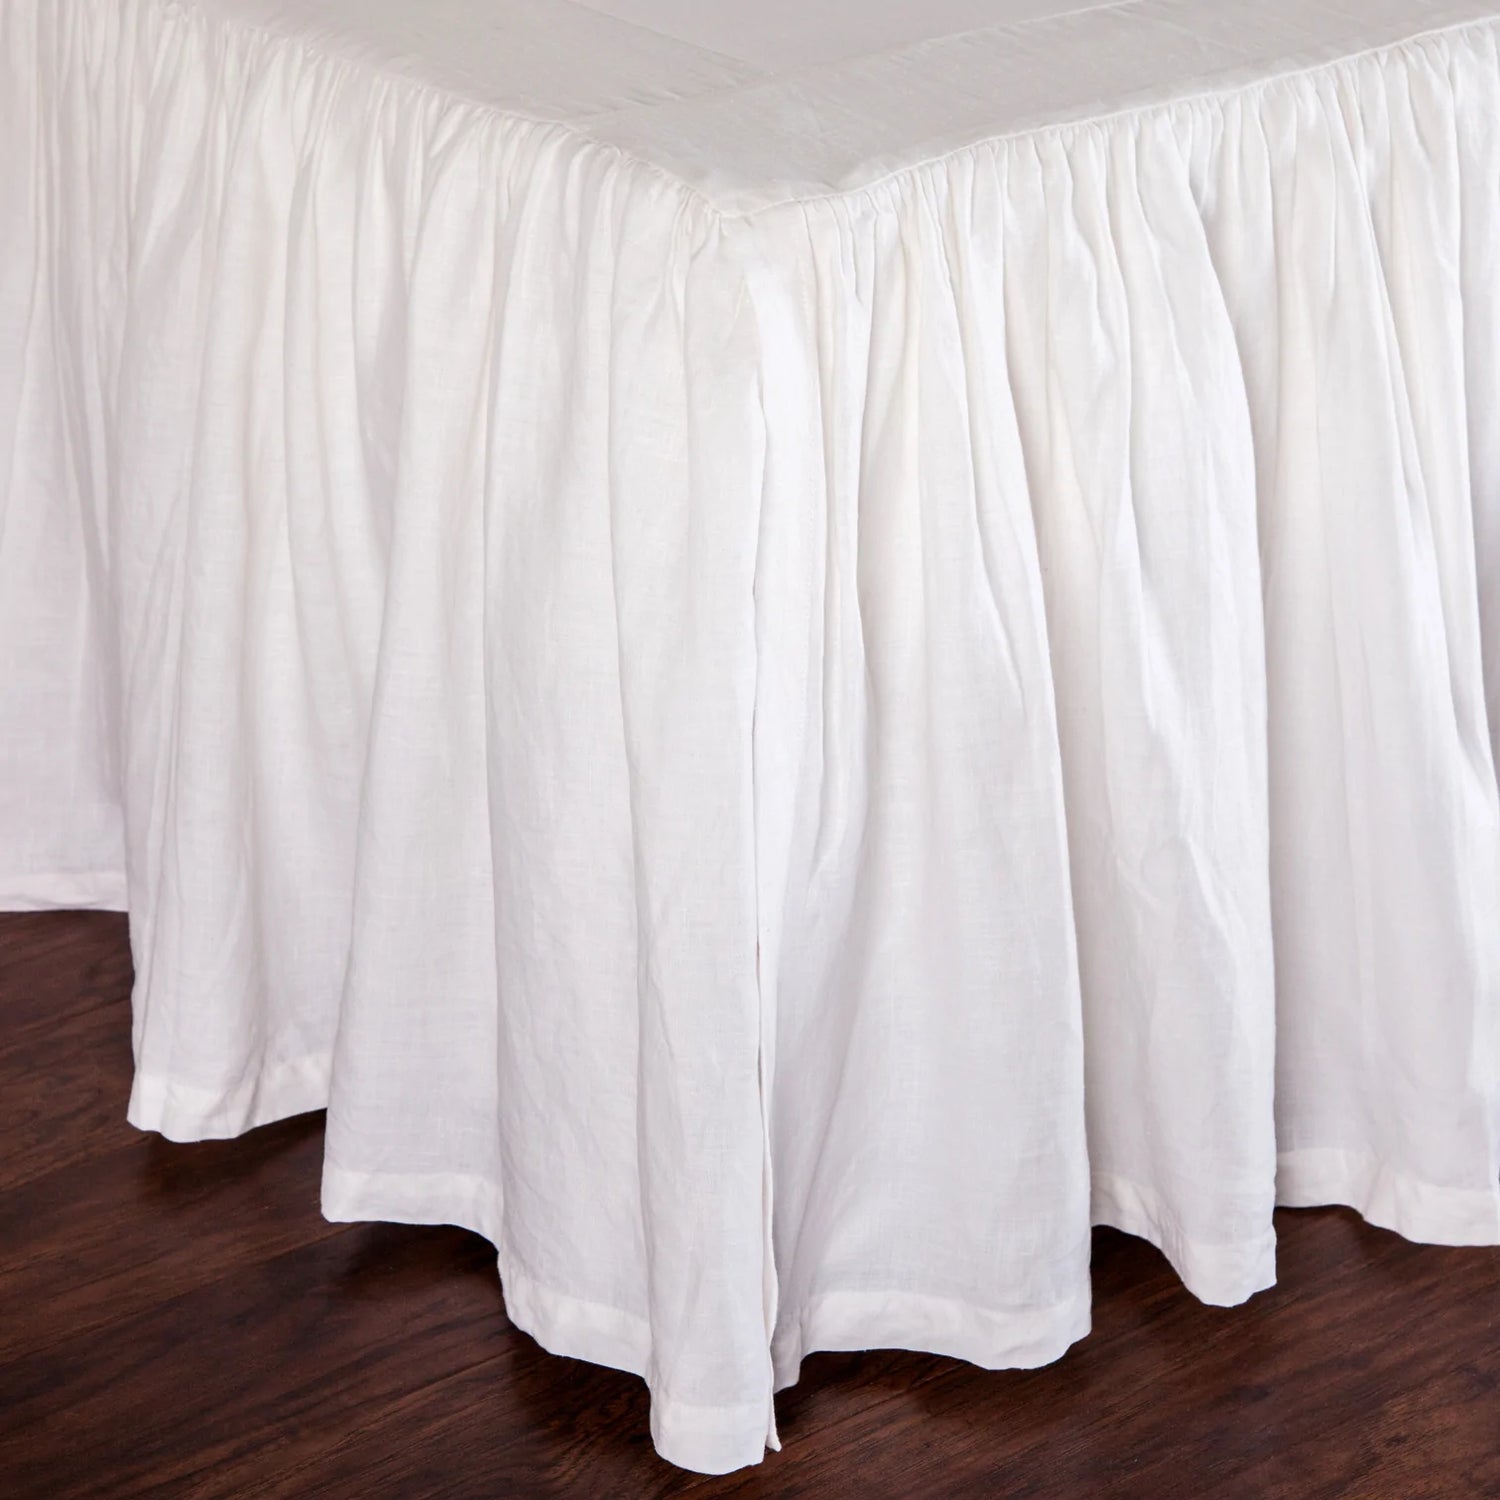 Gathered Linen King Bedskirt, White